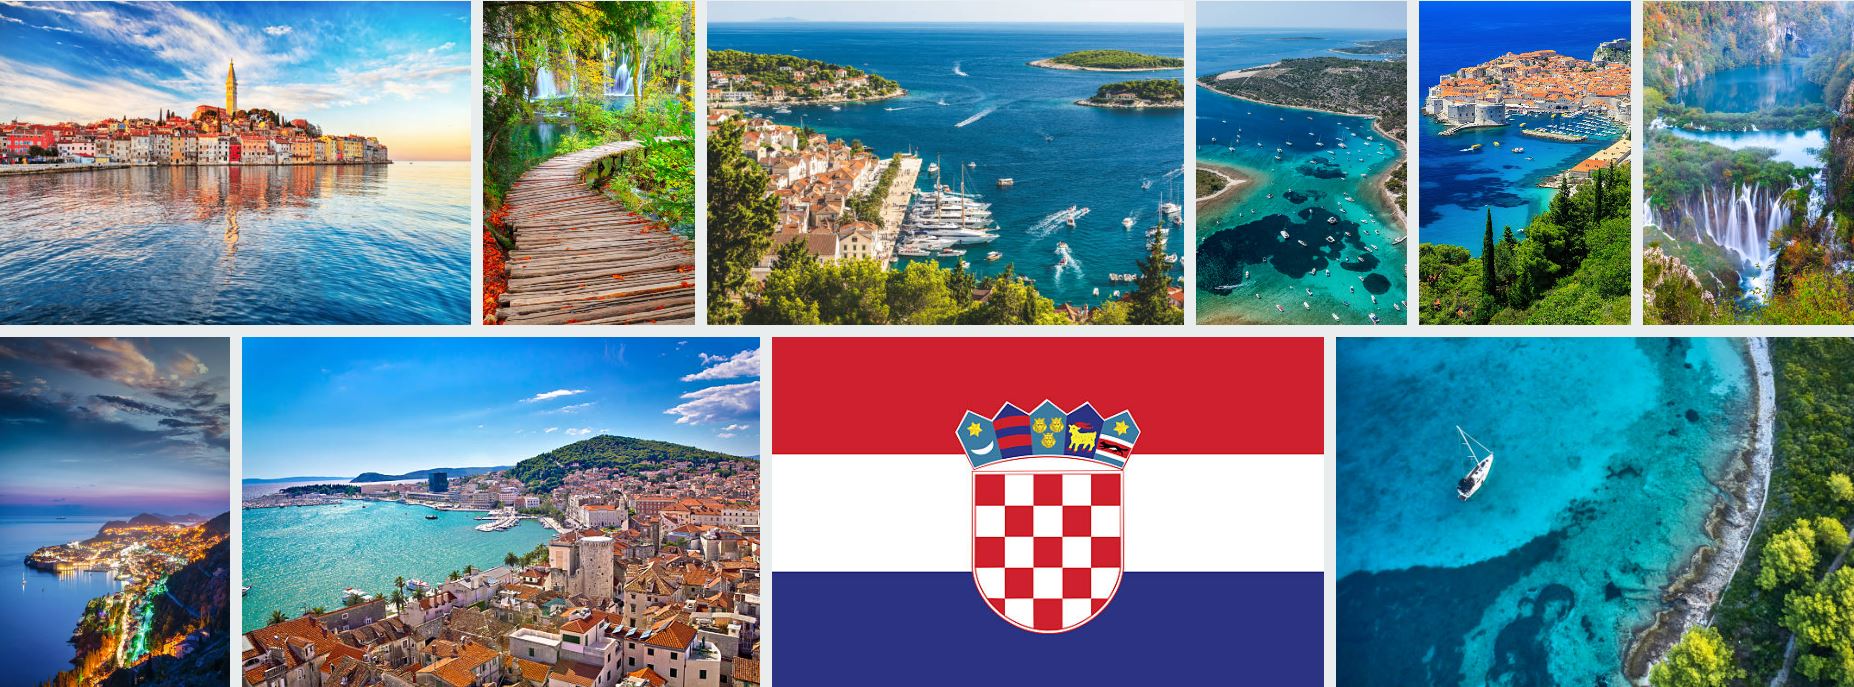 Croatia visa images